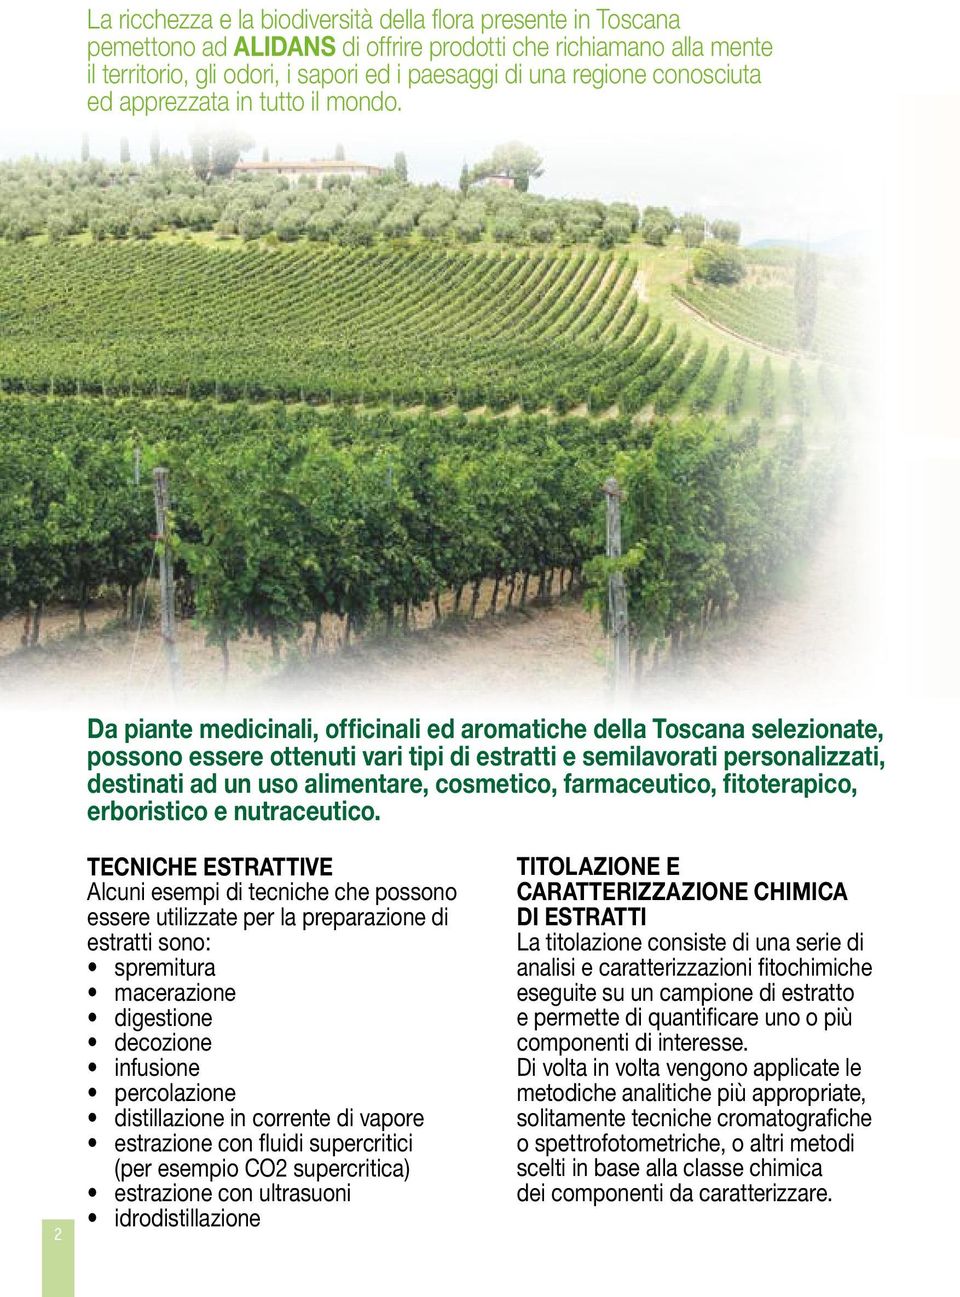 Da piante medicinali, officinali ed aromatiche della Toscana selezionate, possono essere ottenuti vari tipi di estratti e semilavorati personalizzati, destinati ad un uso alimentare, cosmetico,